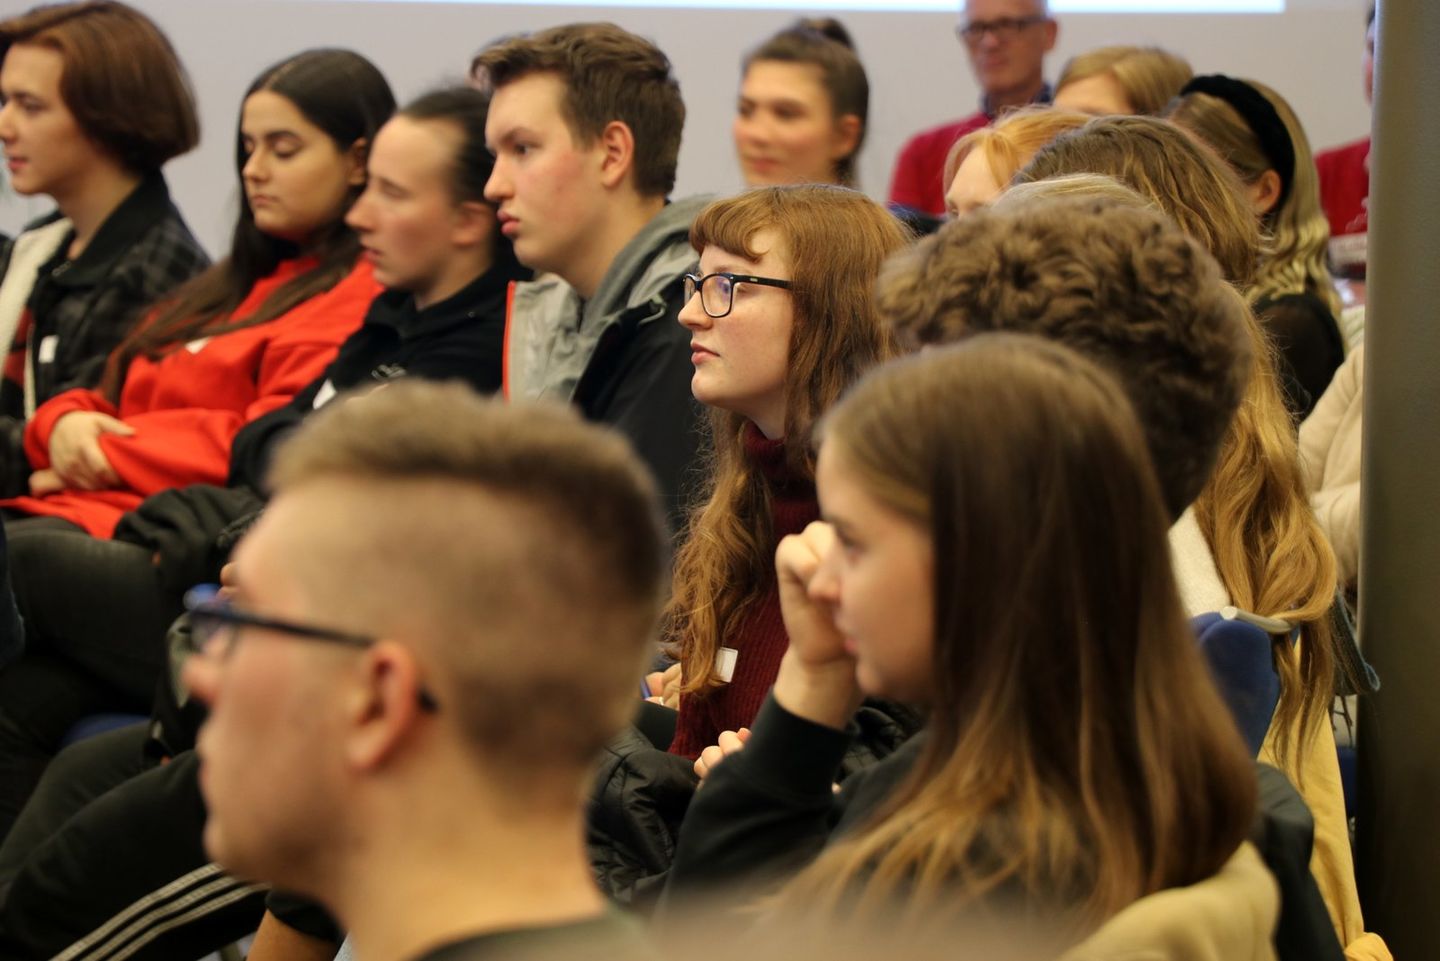 Zertifikat: Am 26. und 30. Oktober 2019 machten mehr als 100 Schülerinnen und Schüler an der HWR Berlin ihren Wirtschaftsführerschein.